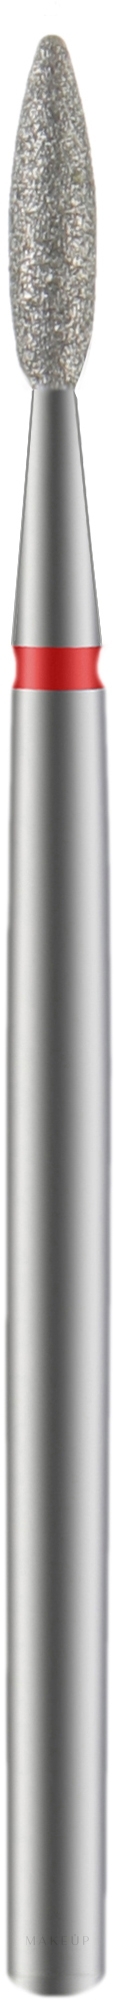 Diamantfräser Flame rot Durchmesser 2,1 mm Arbeitsteil 8 mm - Staleks Pro — Bild 1 St.